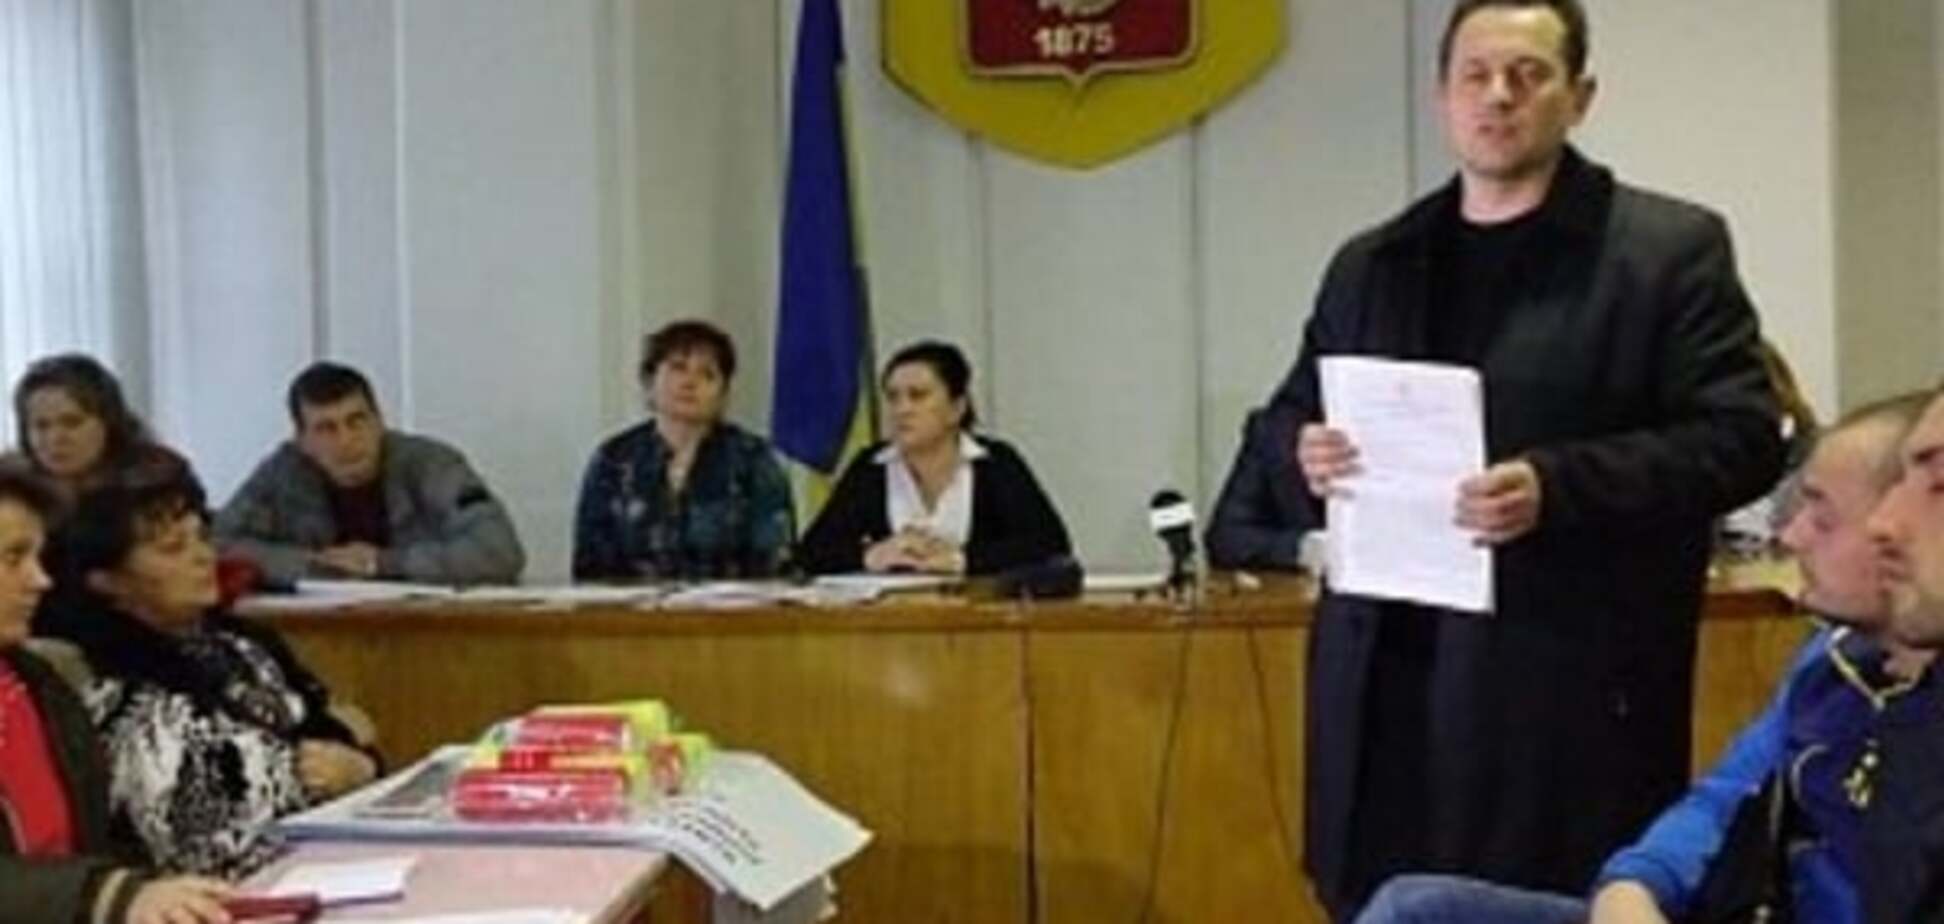 Суд отменил выборы в Красноармейске из-за недействительных бюллетеней